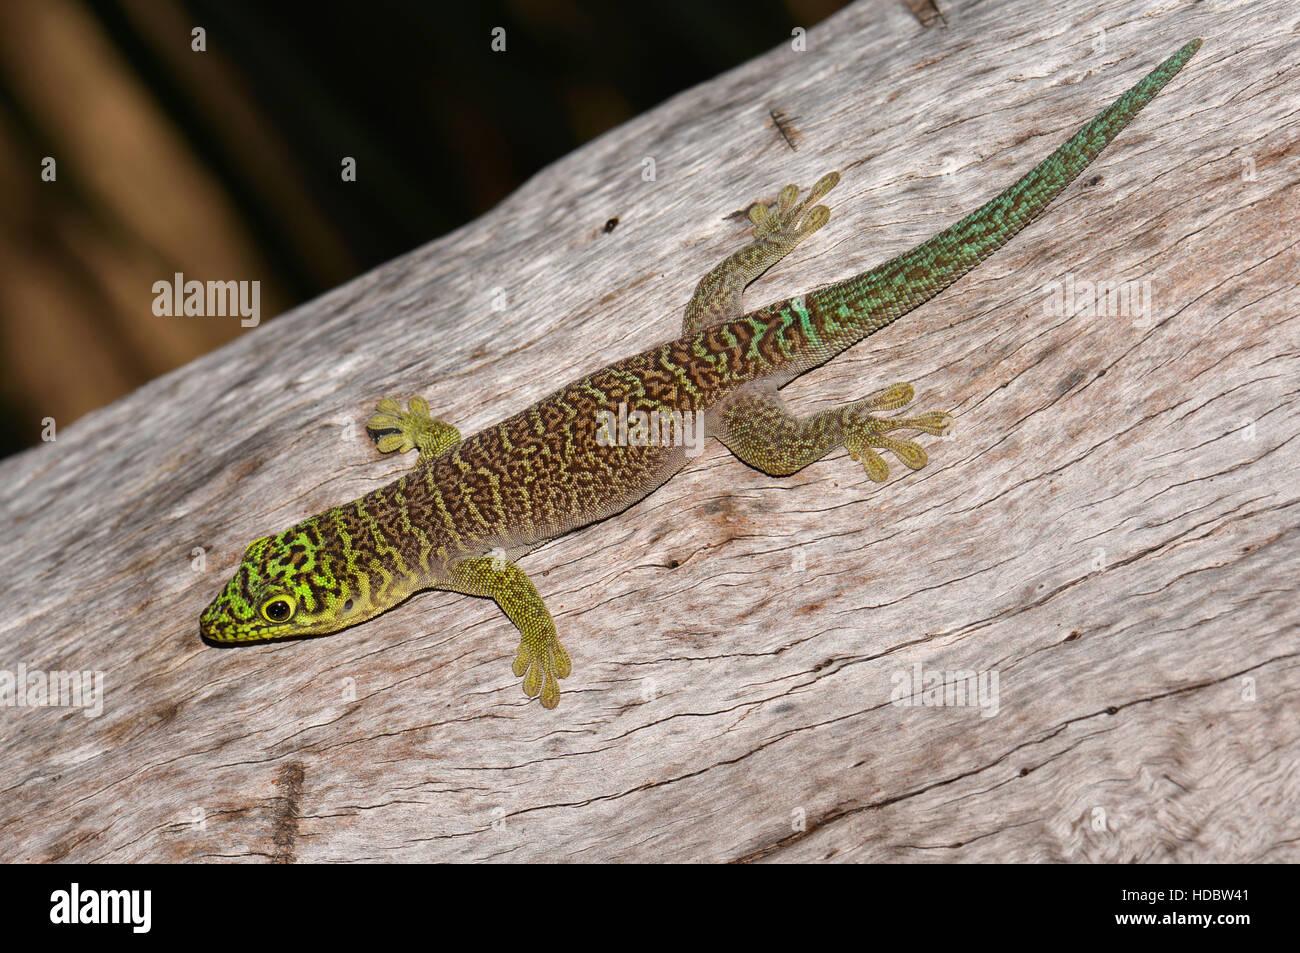 Standing's day gecko (Phelsuma standingi), Zombitse National Park, Southwest, Madagascar Stock Photo